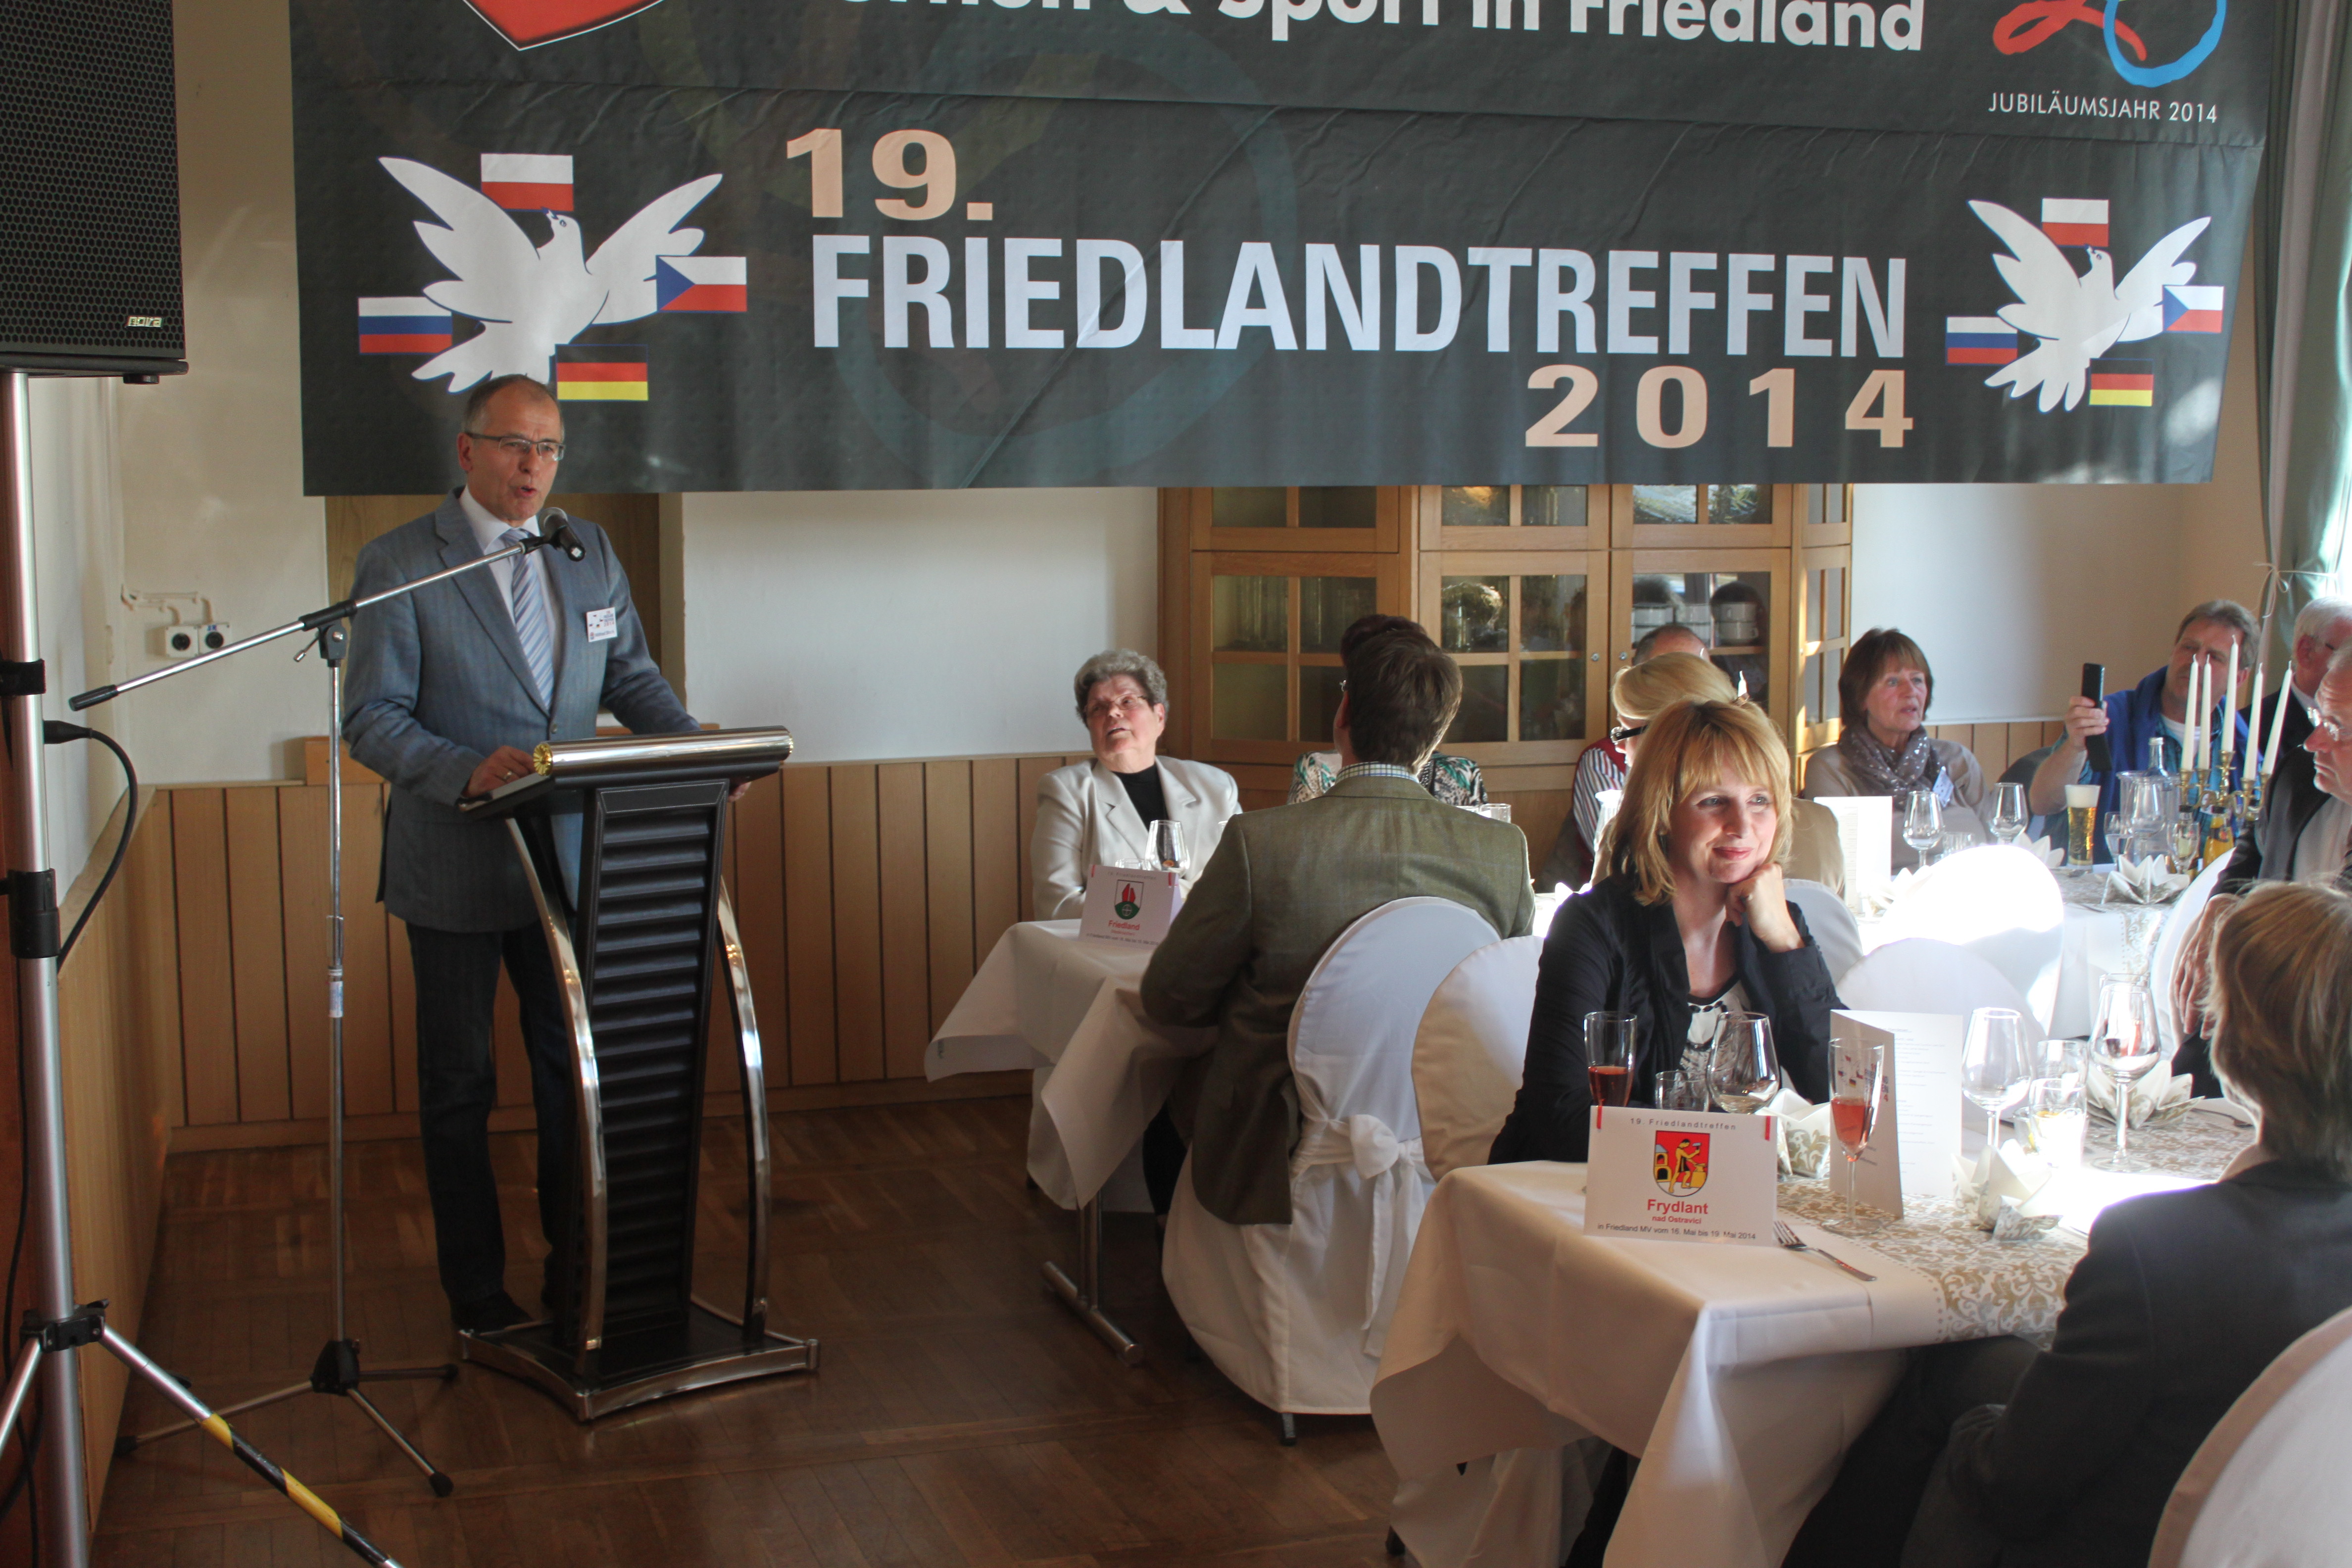 Foto Friedlandtreffen 2014 in Mecklenburg